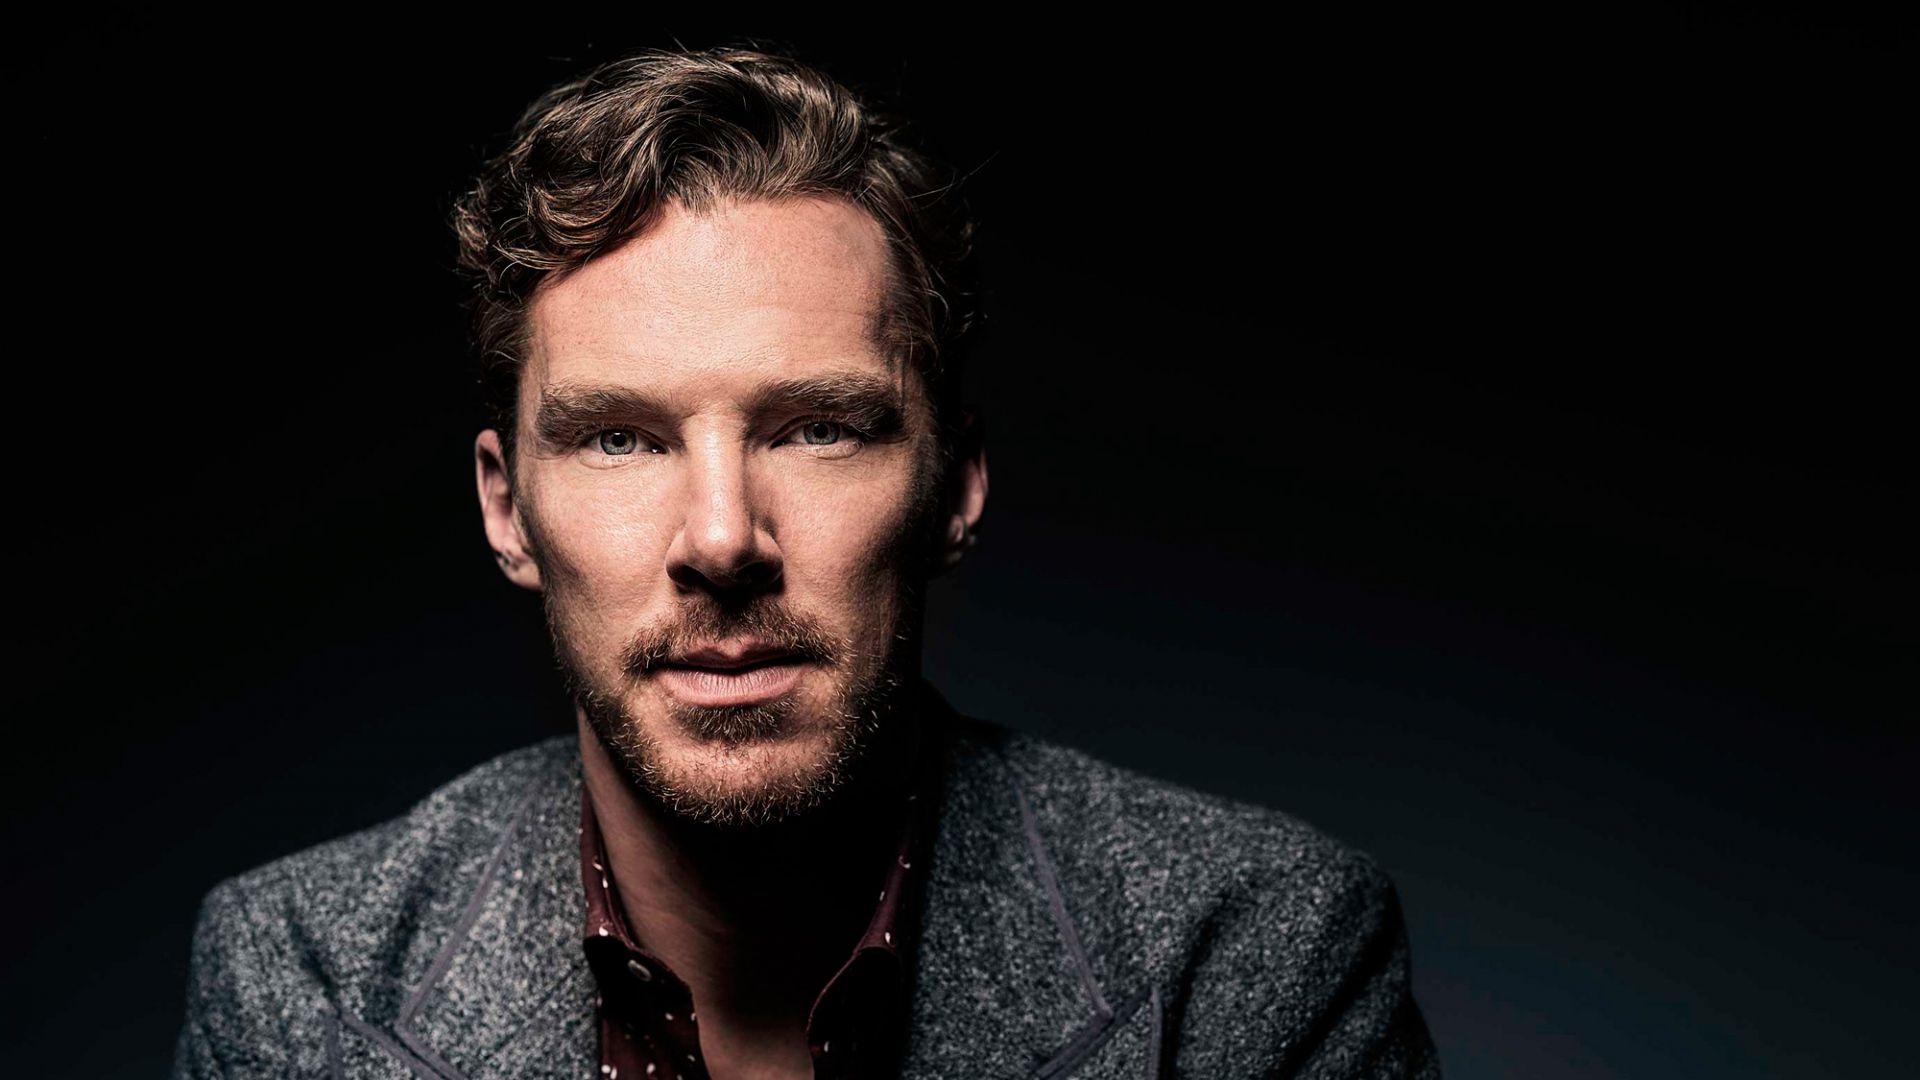 Actor In Focus: Benedict Cumberbatch